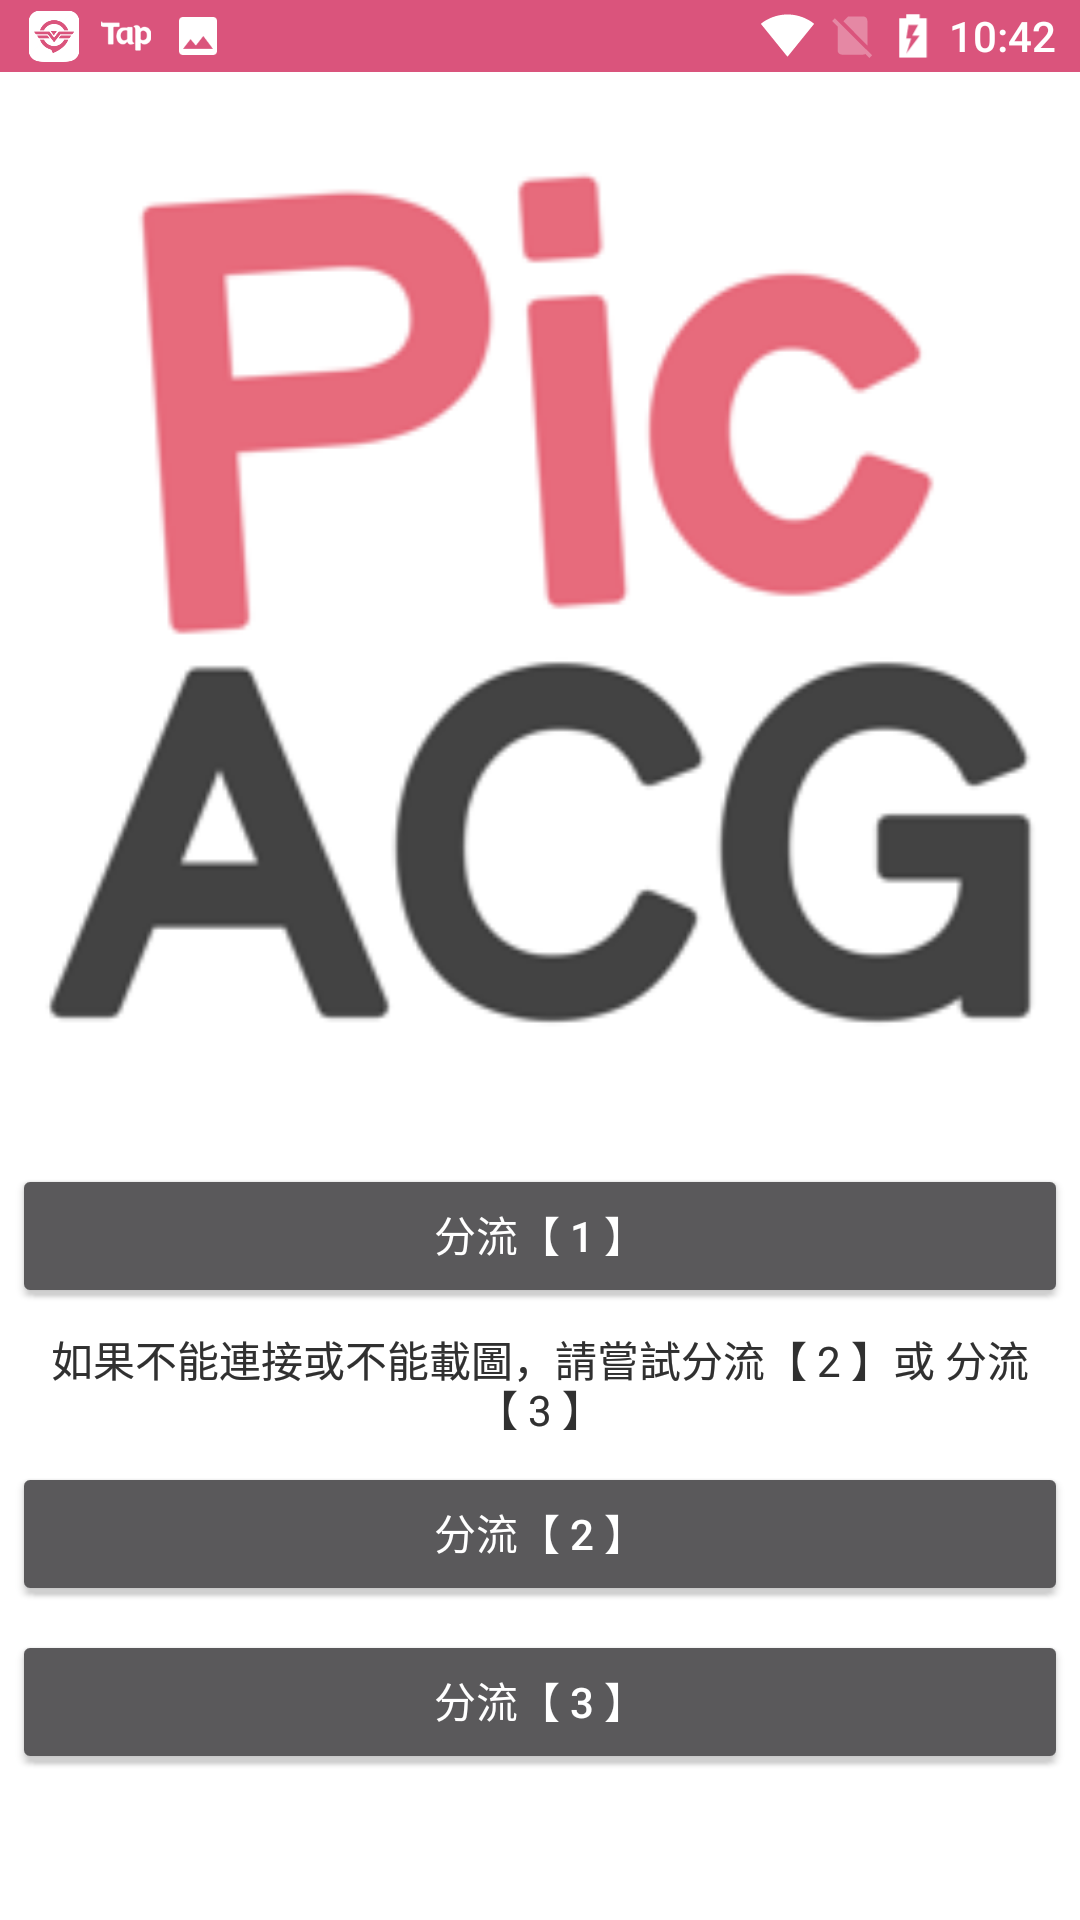 picacgapp 2.0无广告版手机软件app截图